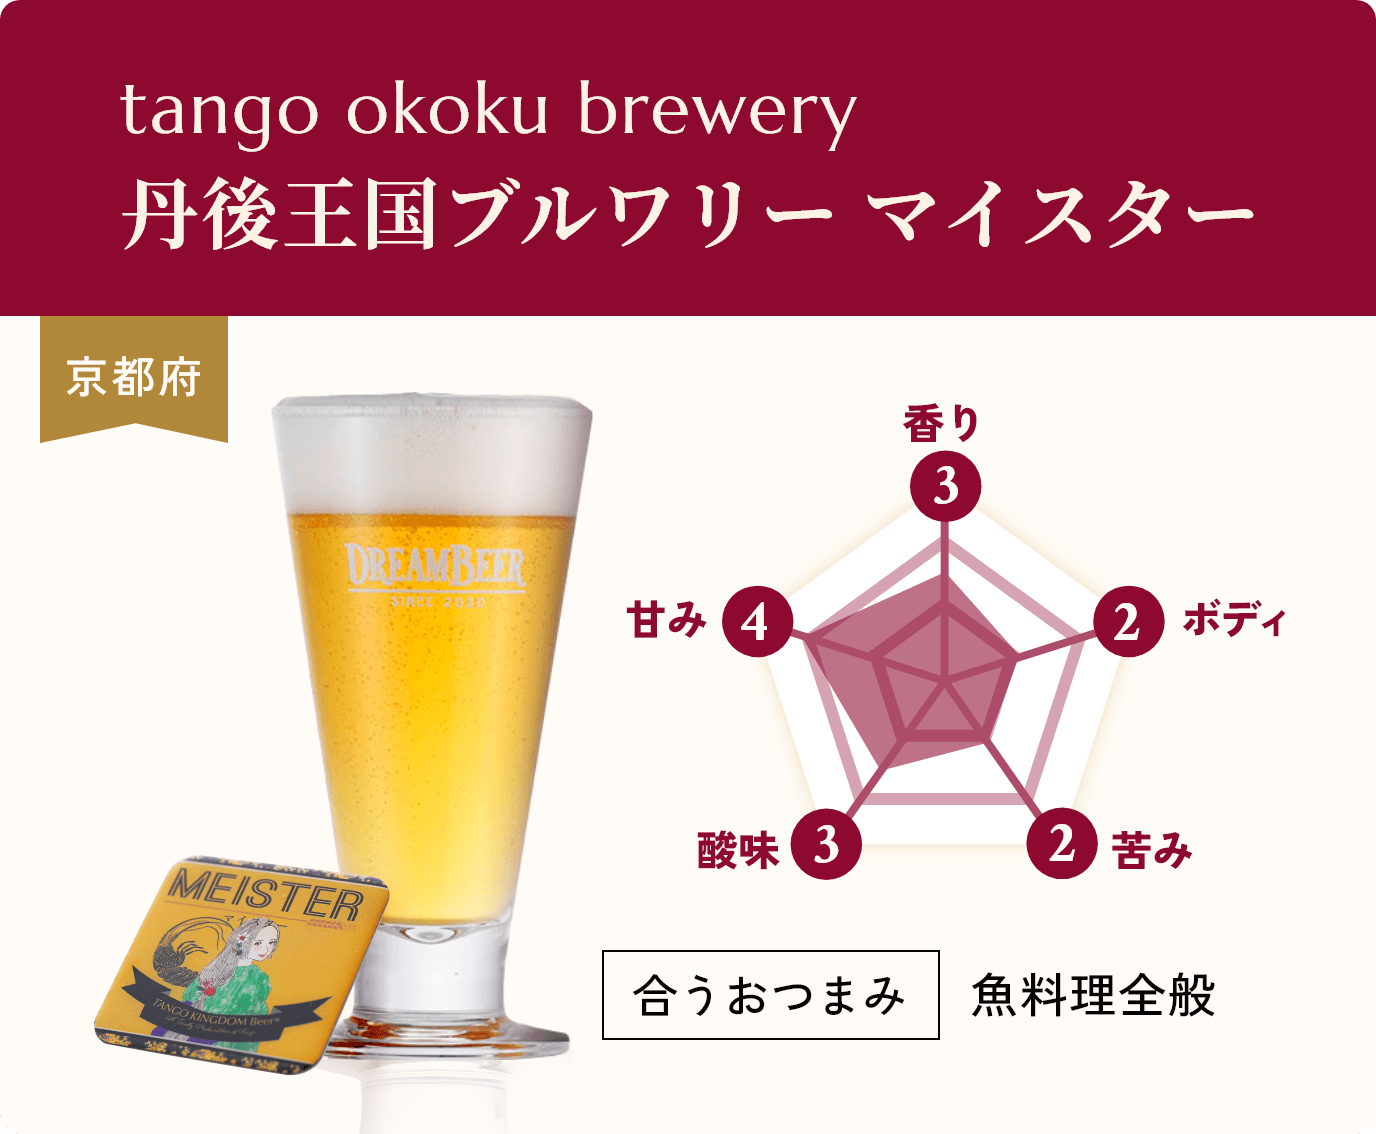 tango okoku brewery,丹後王国ブルワリー マイスター